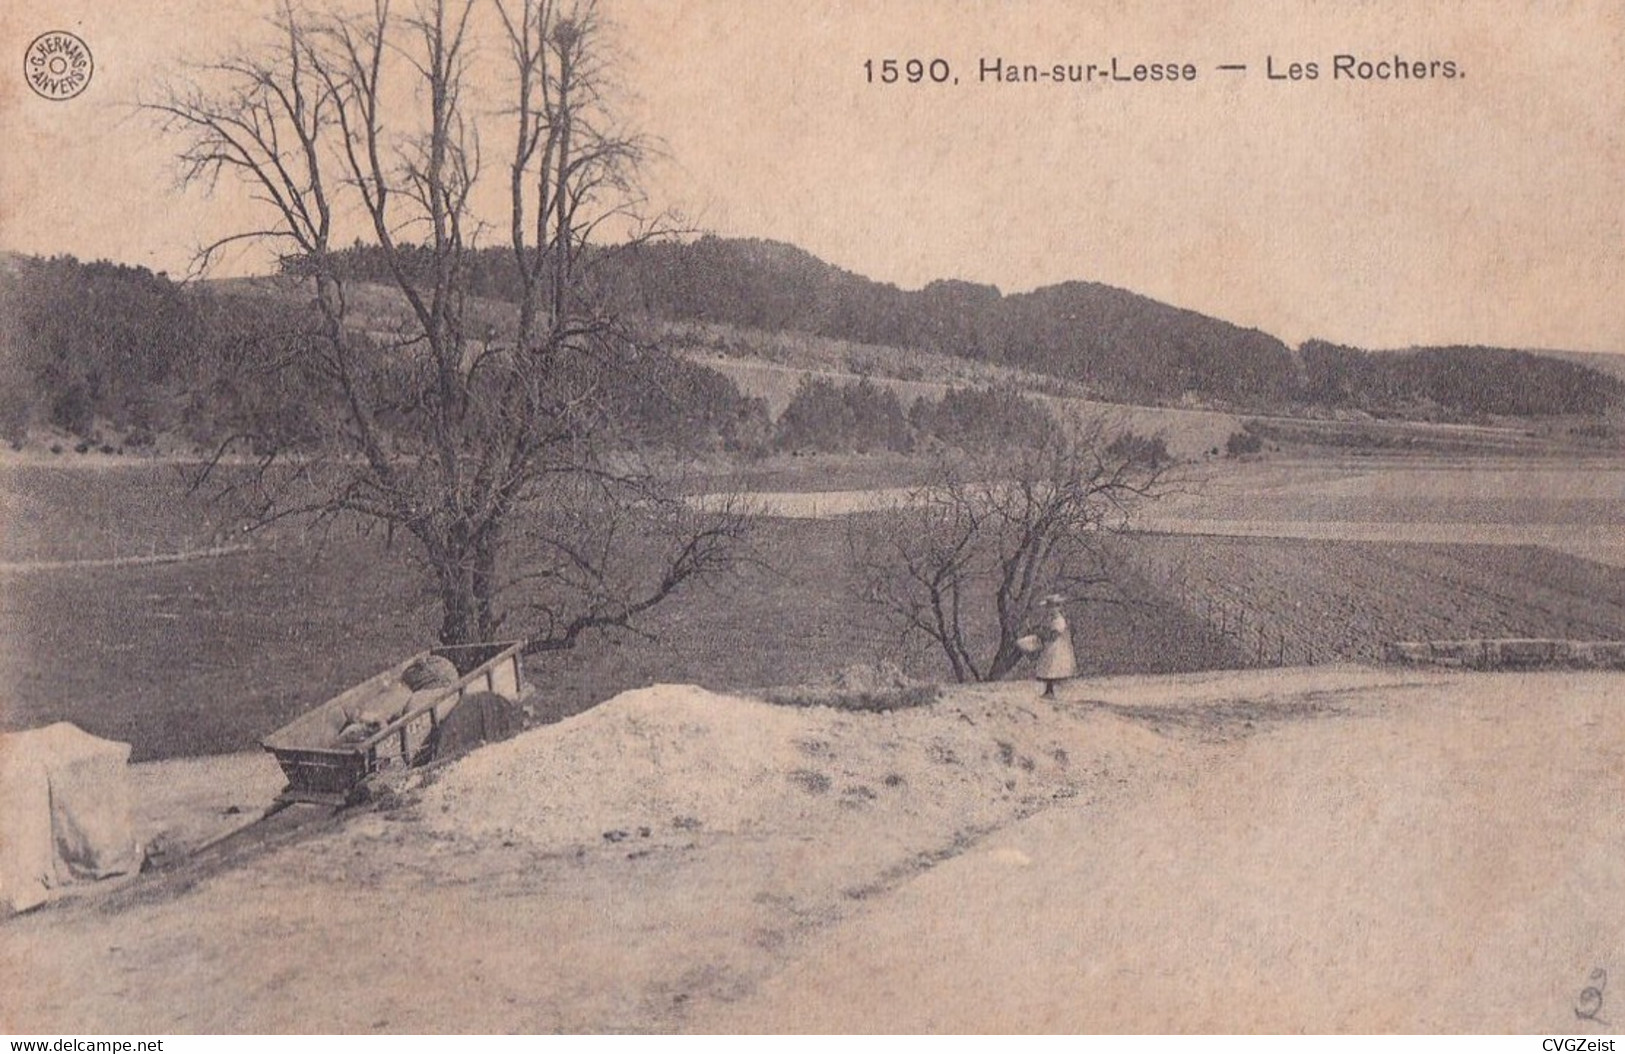 Han-sur-Lesse - Les Rochers - Rochefort